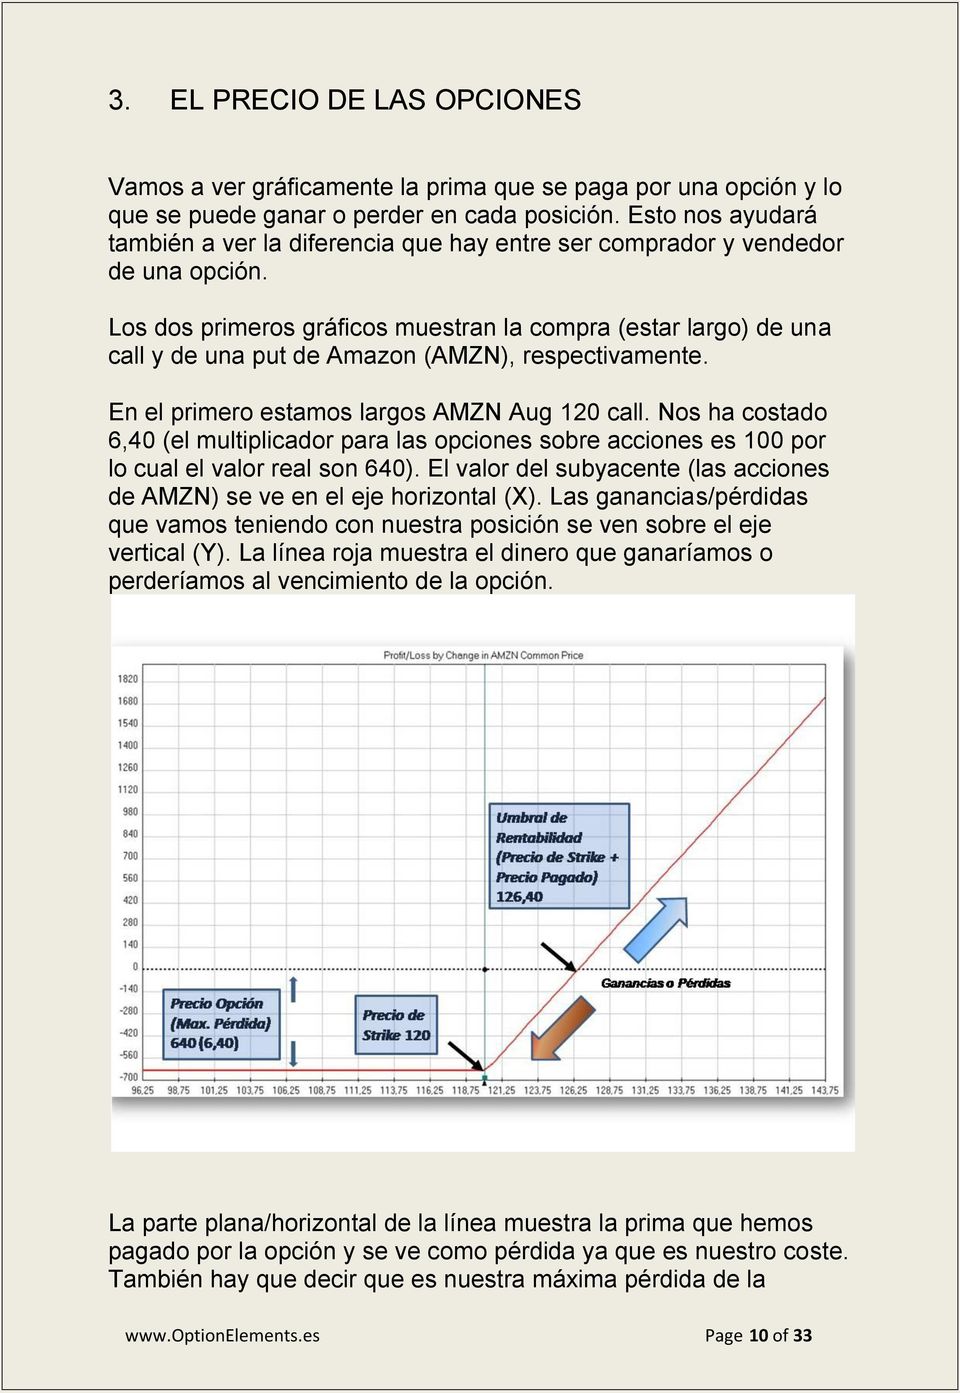 Los dos primeros gráficos muestran la compra (estar largo) de una call y de una put de Amazon (AMZN), respectivamente. En el primero estamos largos AMZN Aug 120 call.